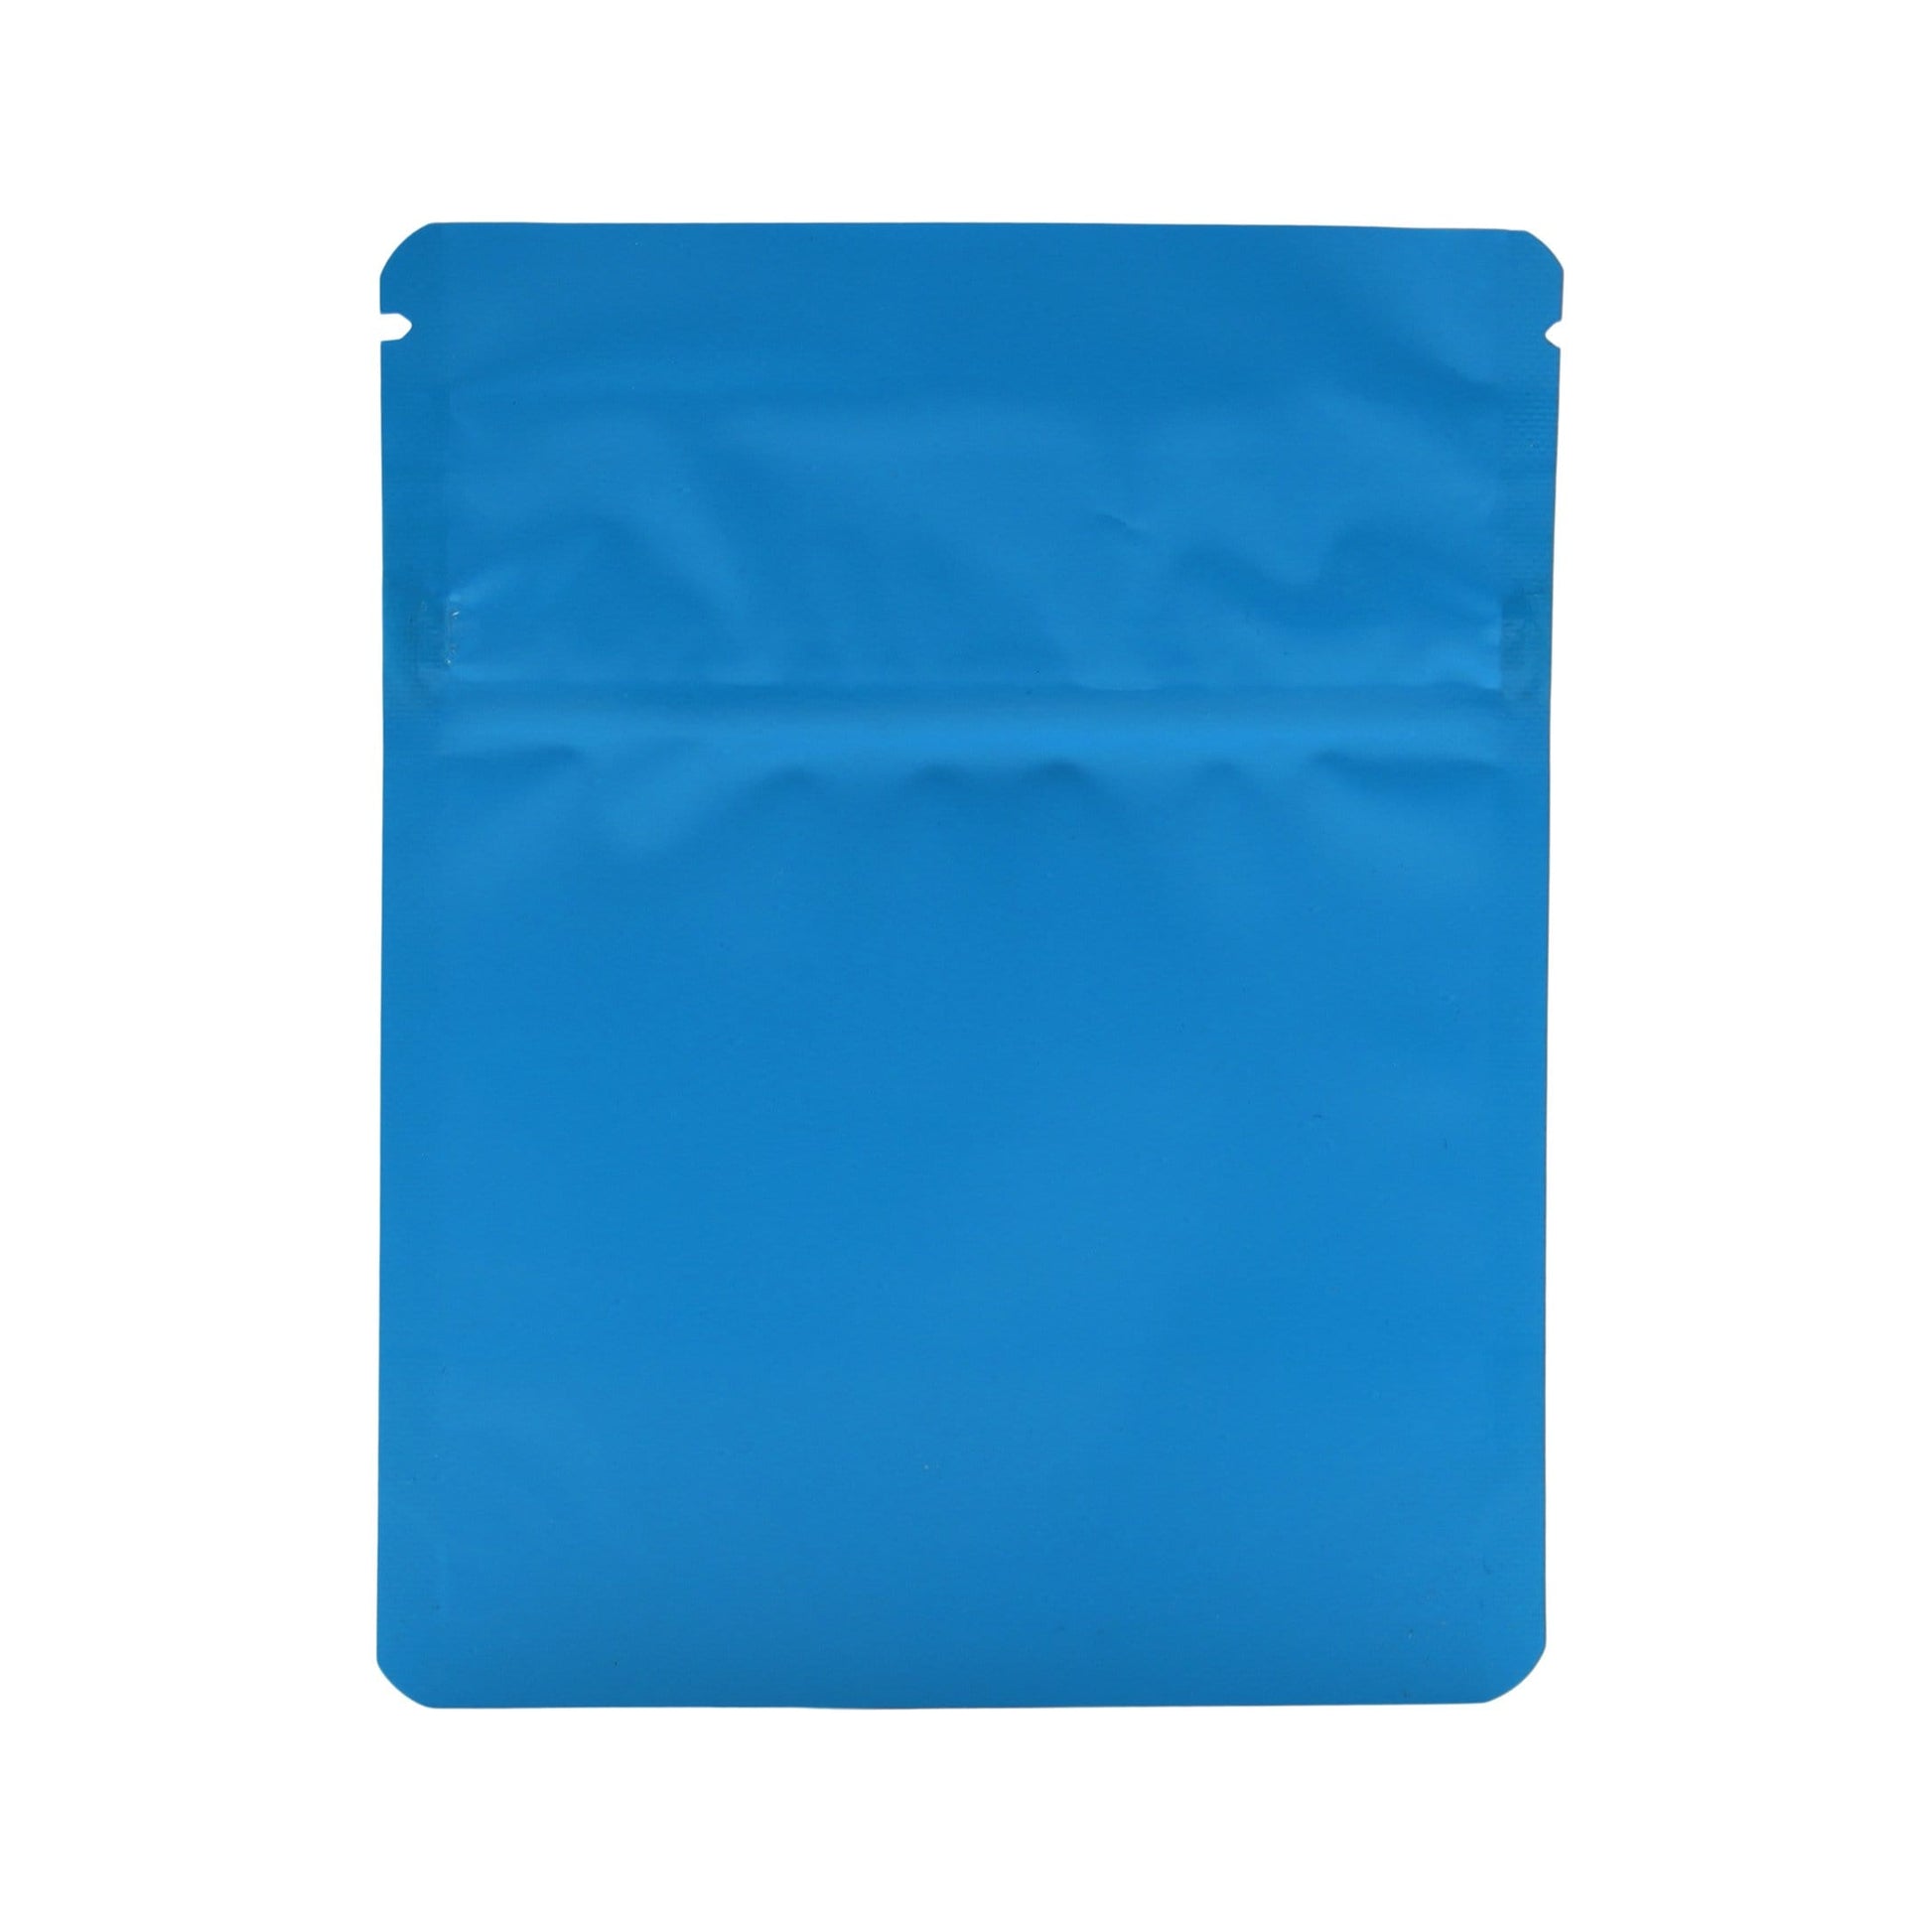 Matte Blue Bag King Child-Resistant Opaque Mylar Bag (1 gram)